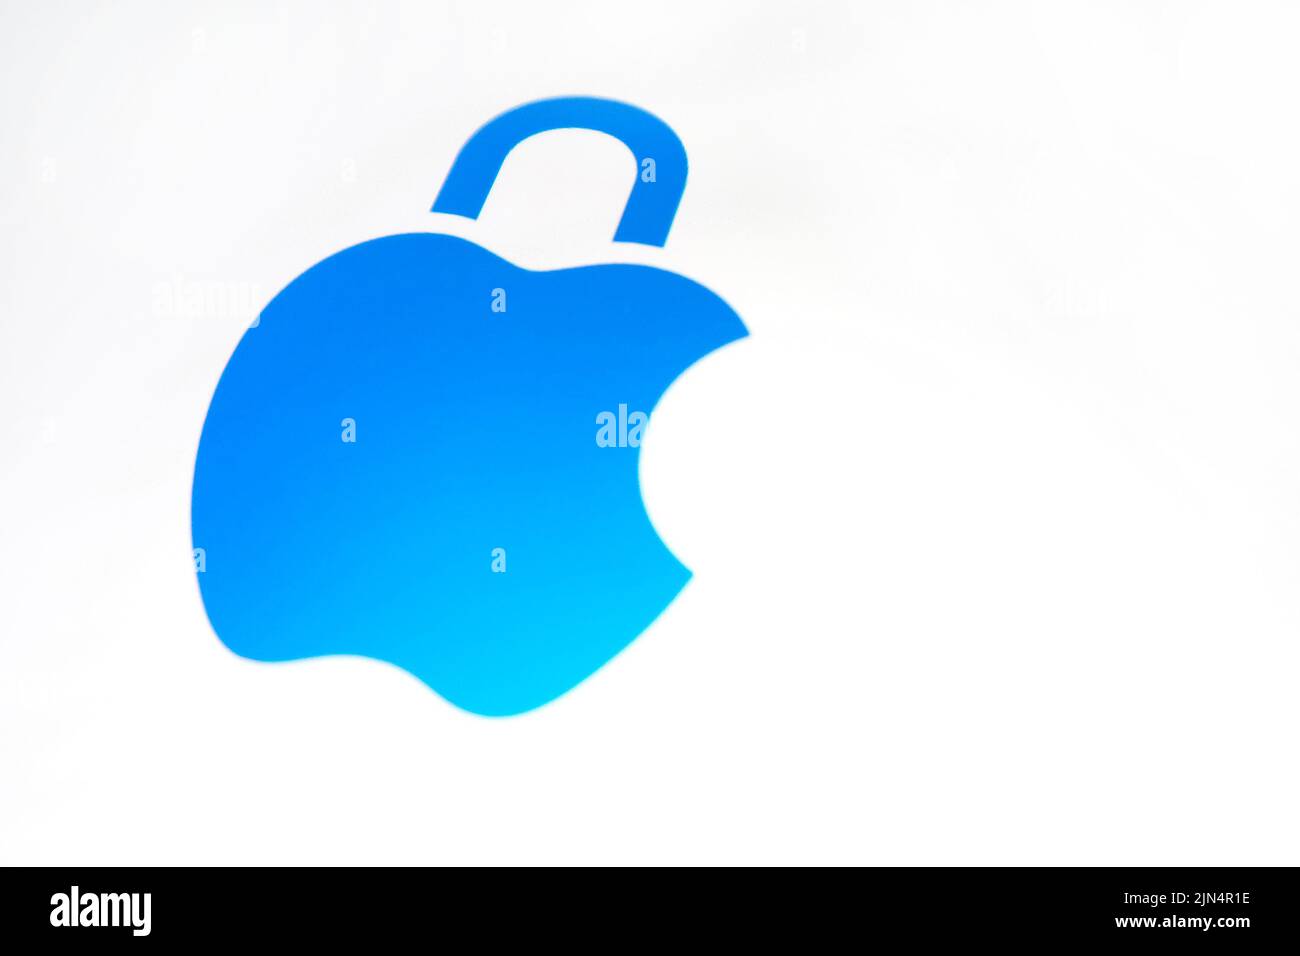 Privacidad y seguridad de Apple: Protección de los usuarios frente a posibles amenazas online y locales Foto de stock